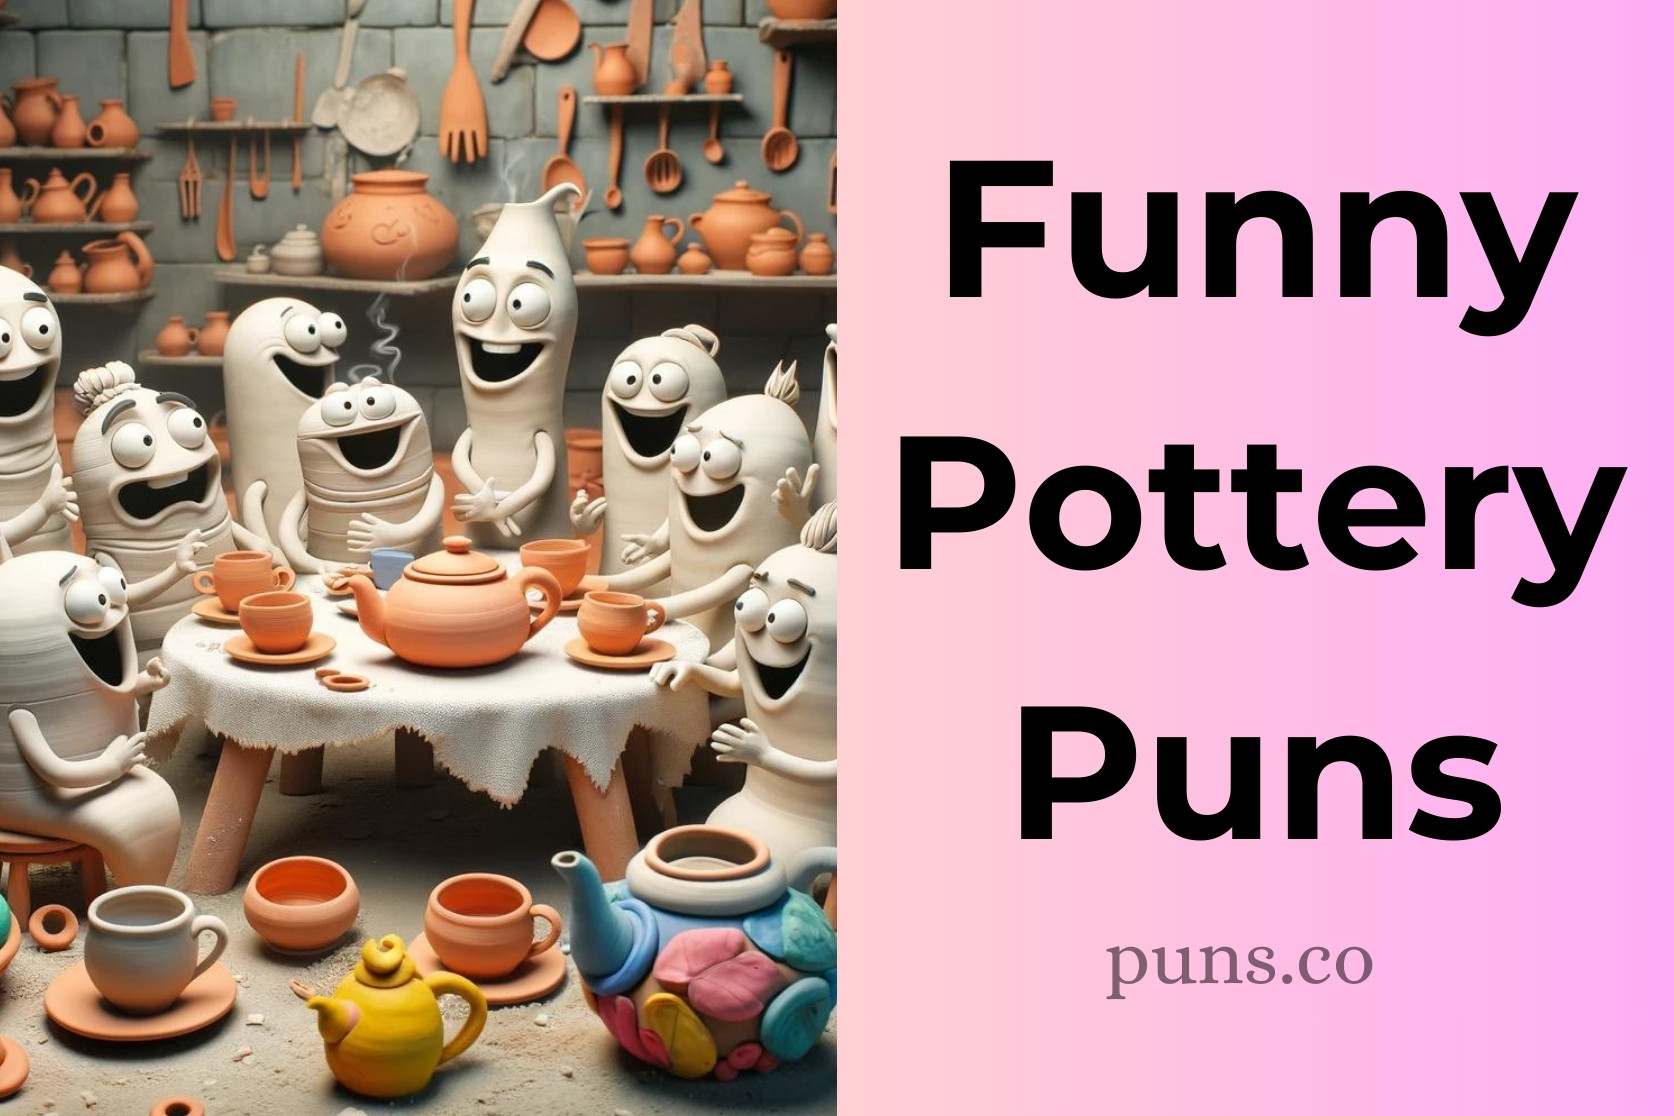 Pottery Puns